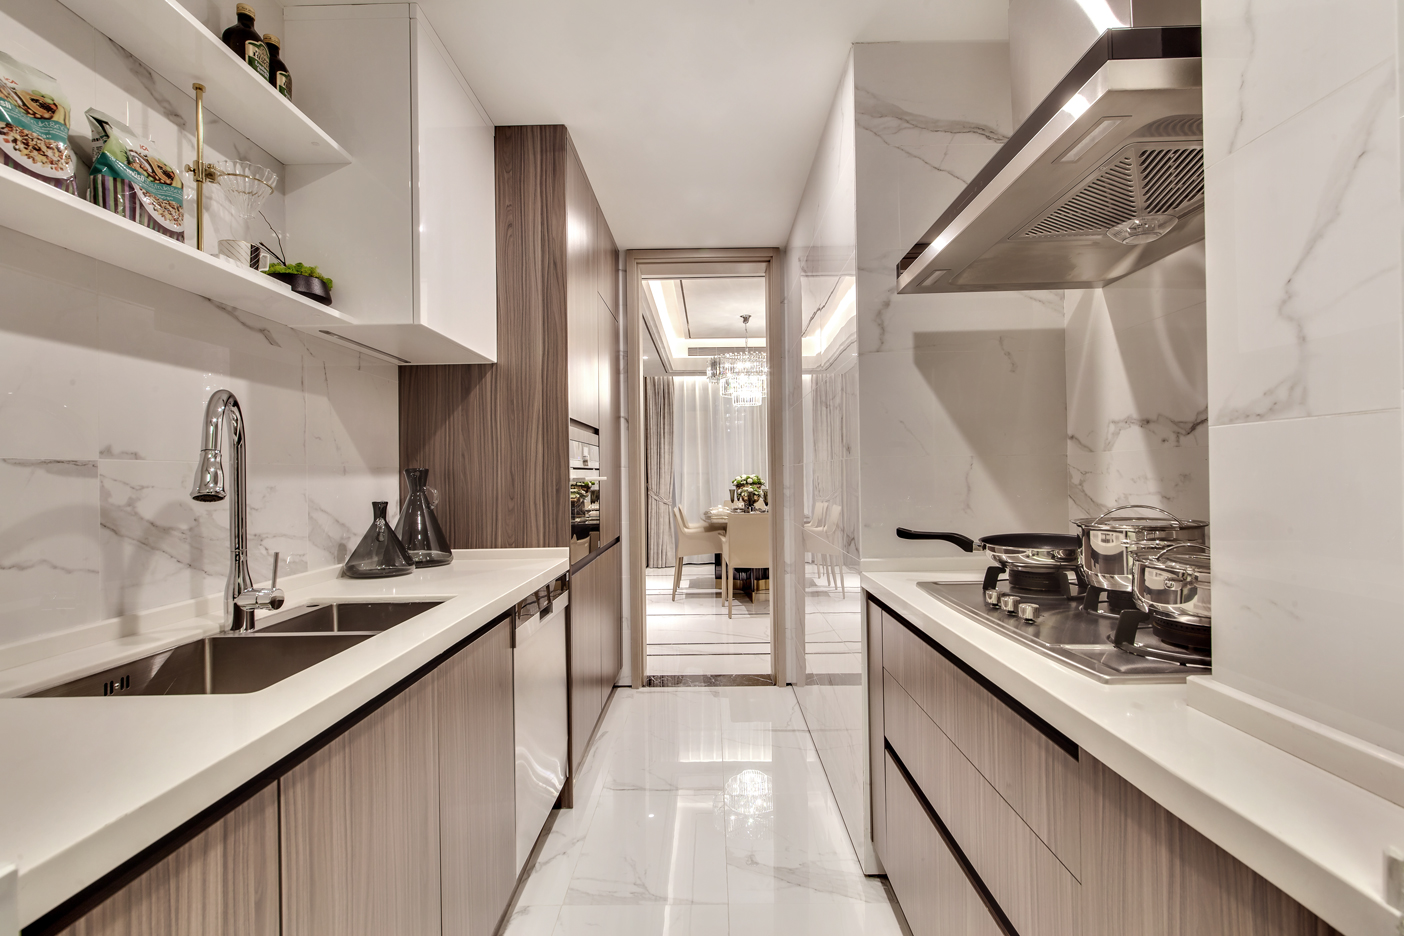 厨房整体色调温润，动线设计流畅，展示出业主对生活的追求与品味。